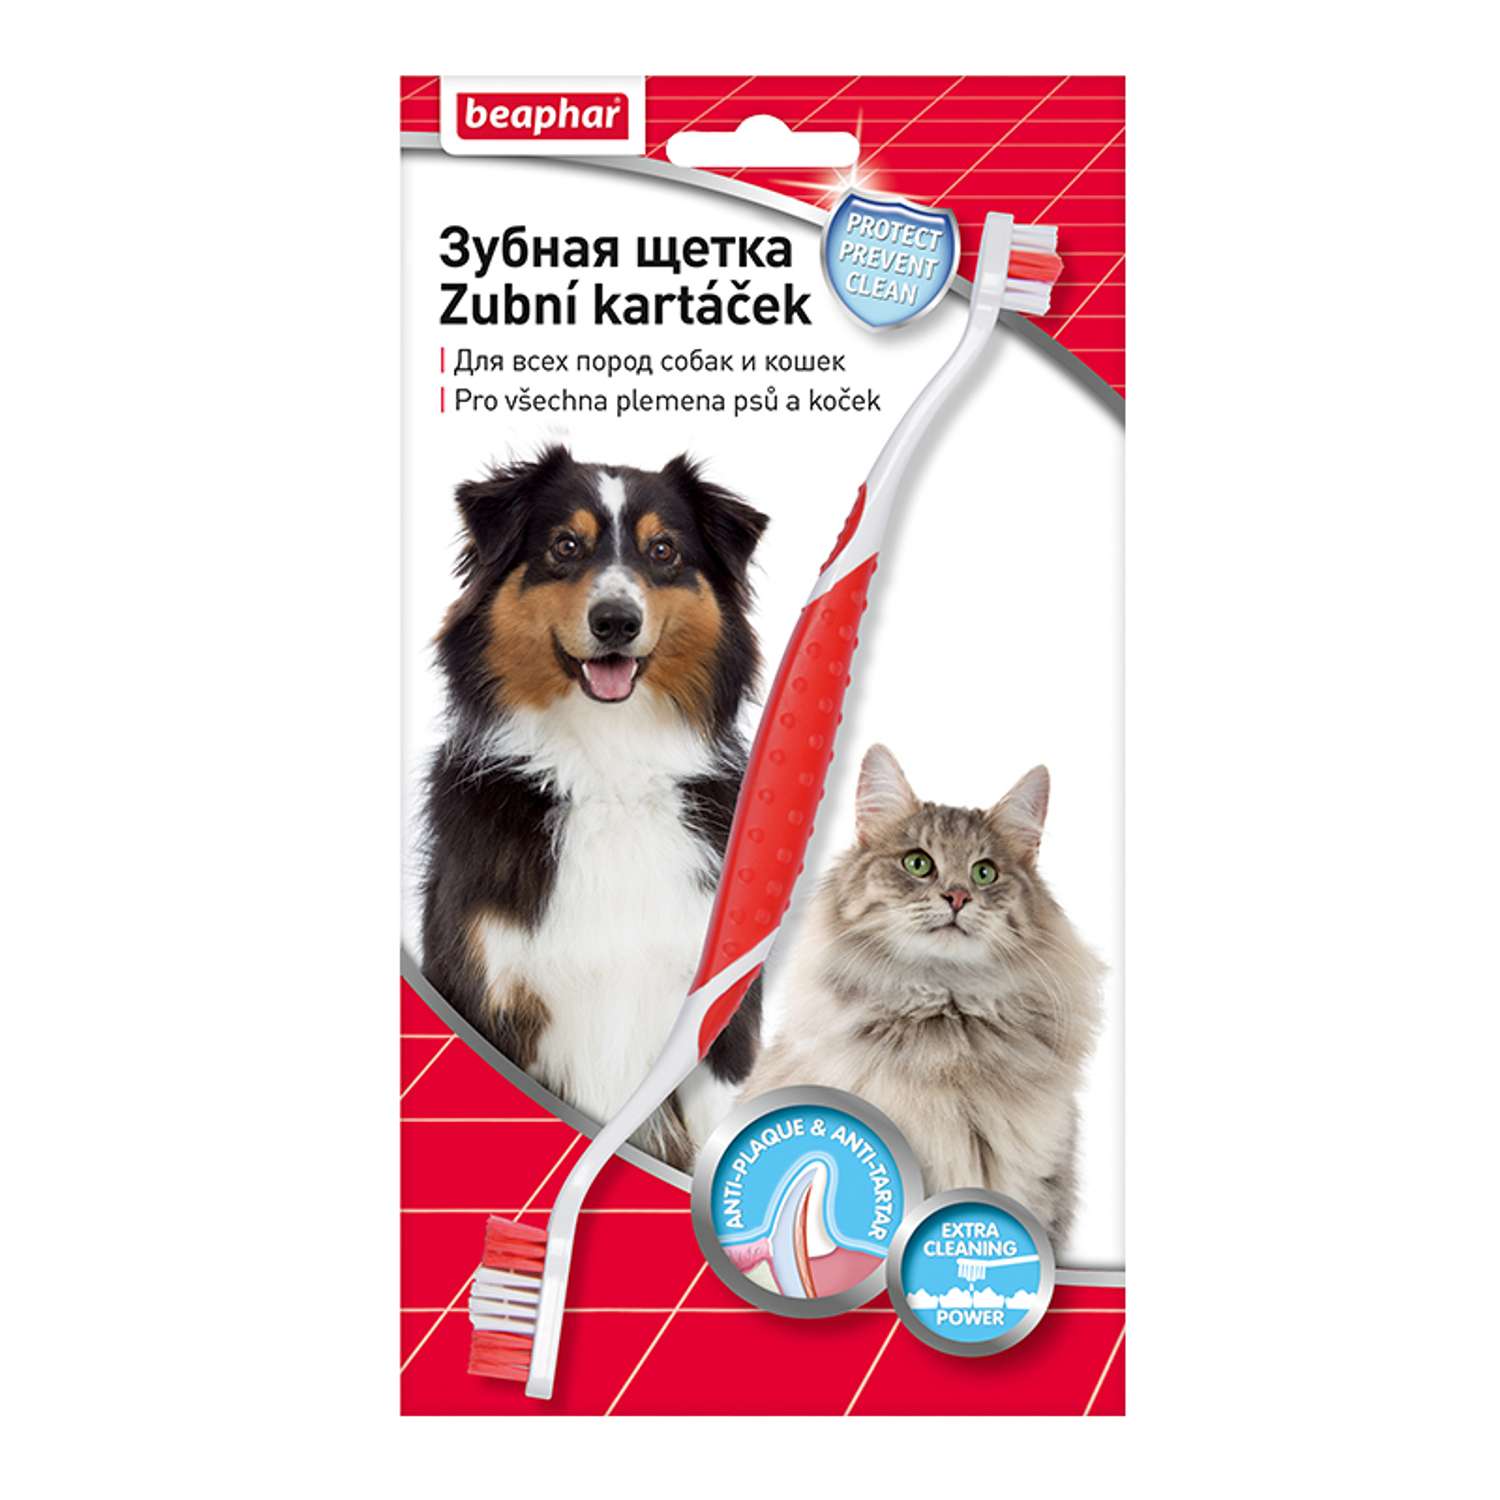 Зубная щетка для собак и кошек Beaphar двойная 36731 - фото 1